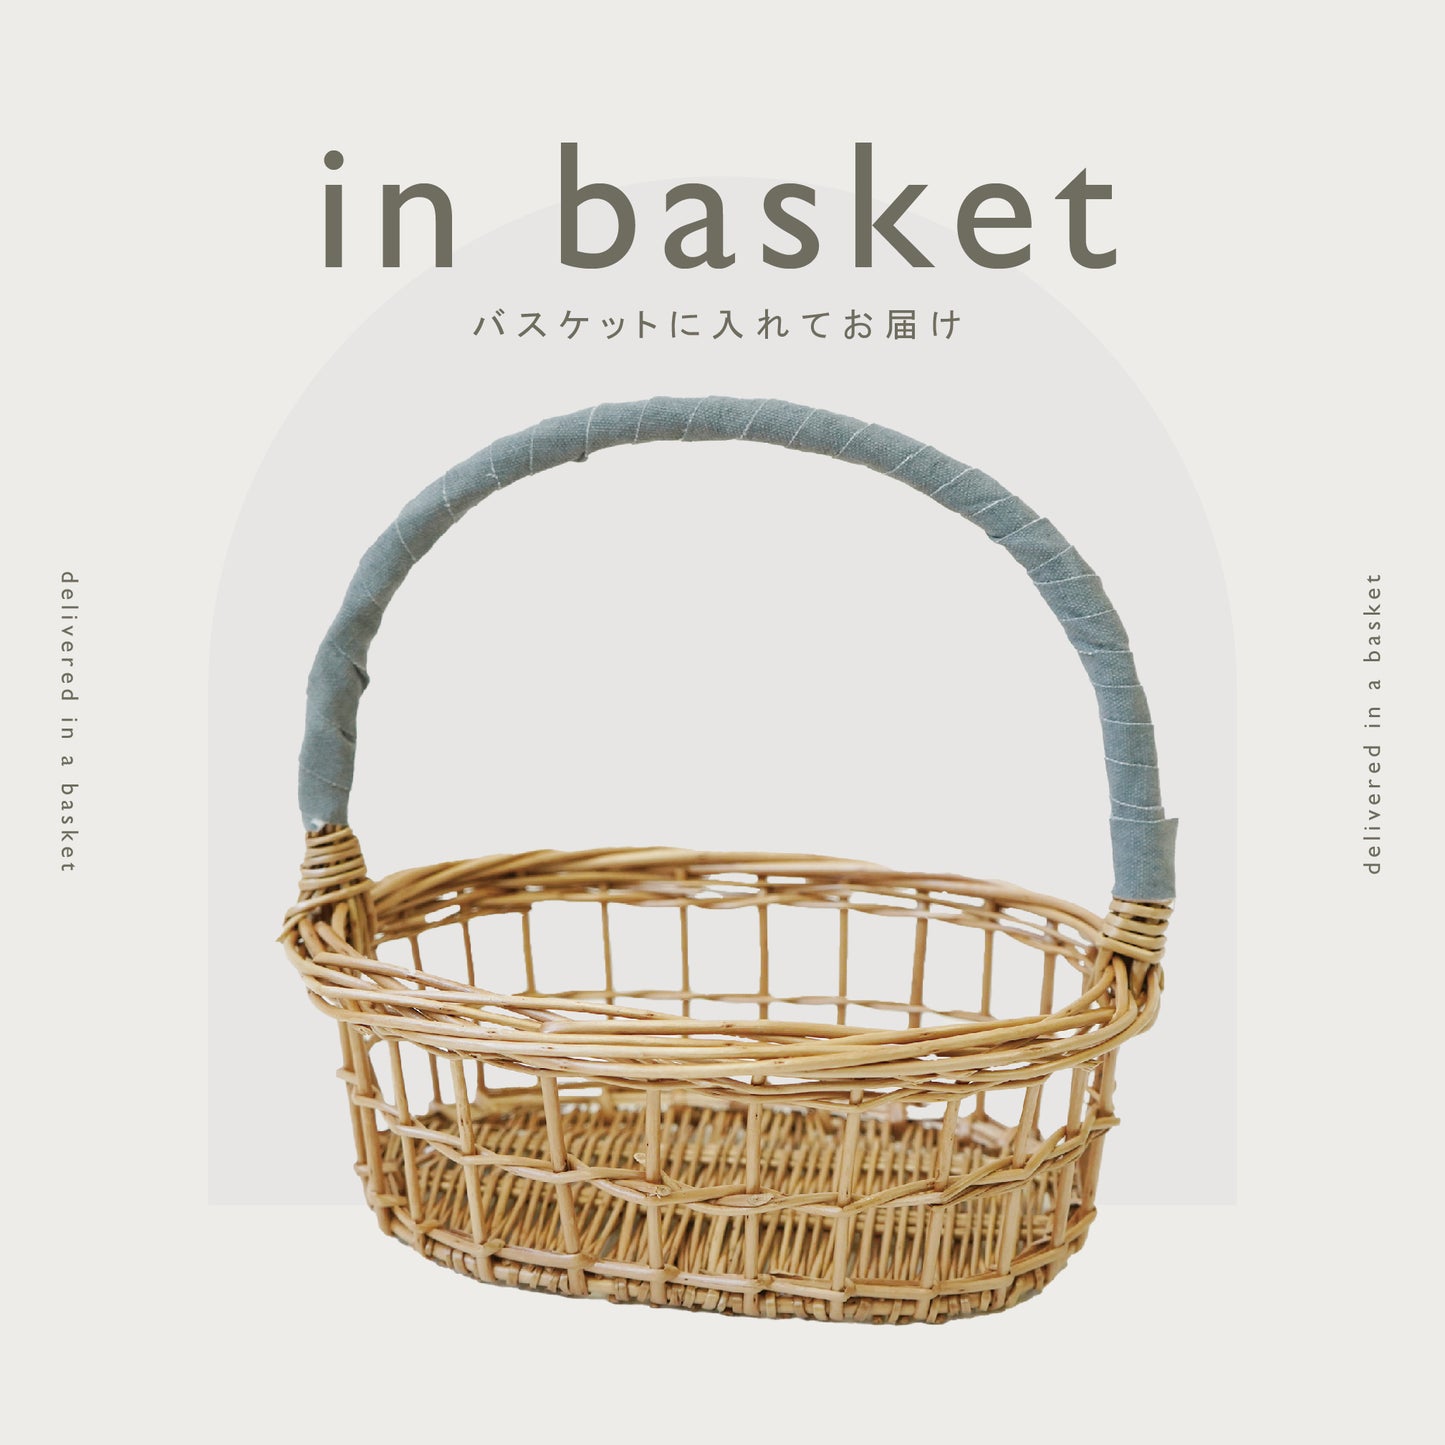 [ ギフトセット ]  BIRTH CELEBRATION BASKET SET - 出産お祝いバスケット [ カゴラッピング付き ]